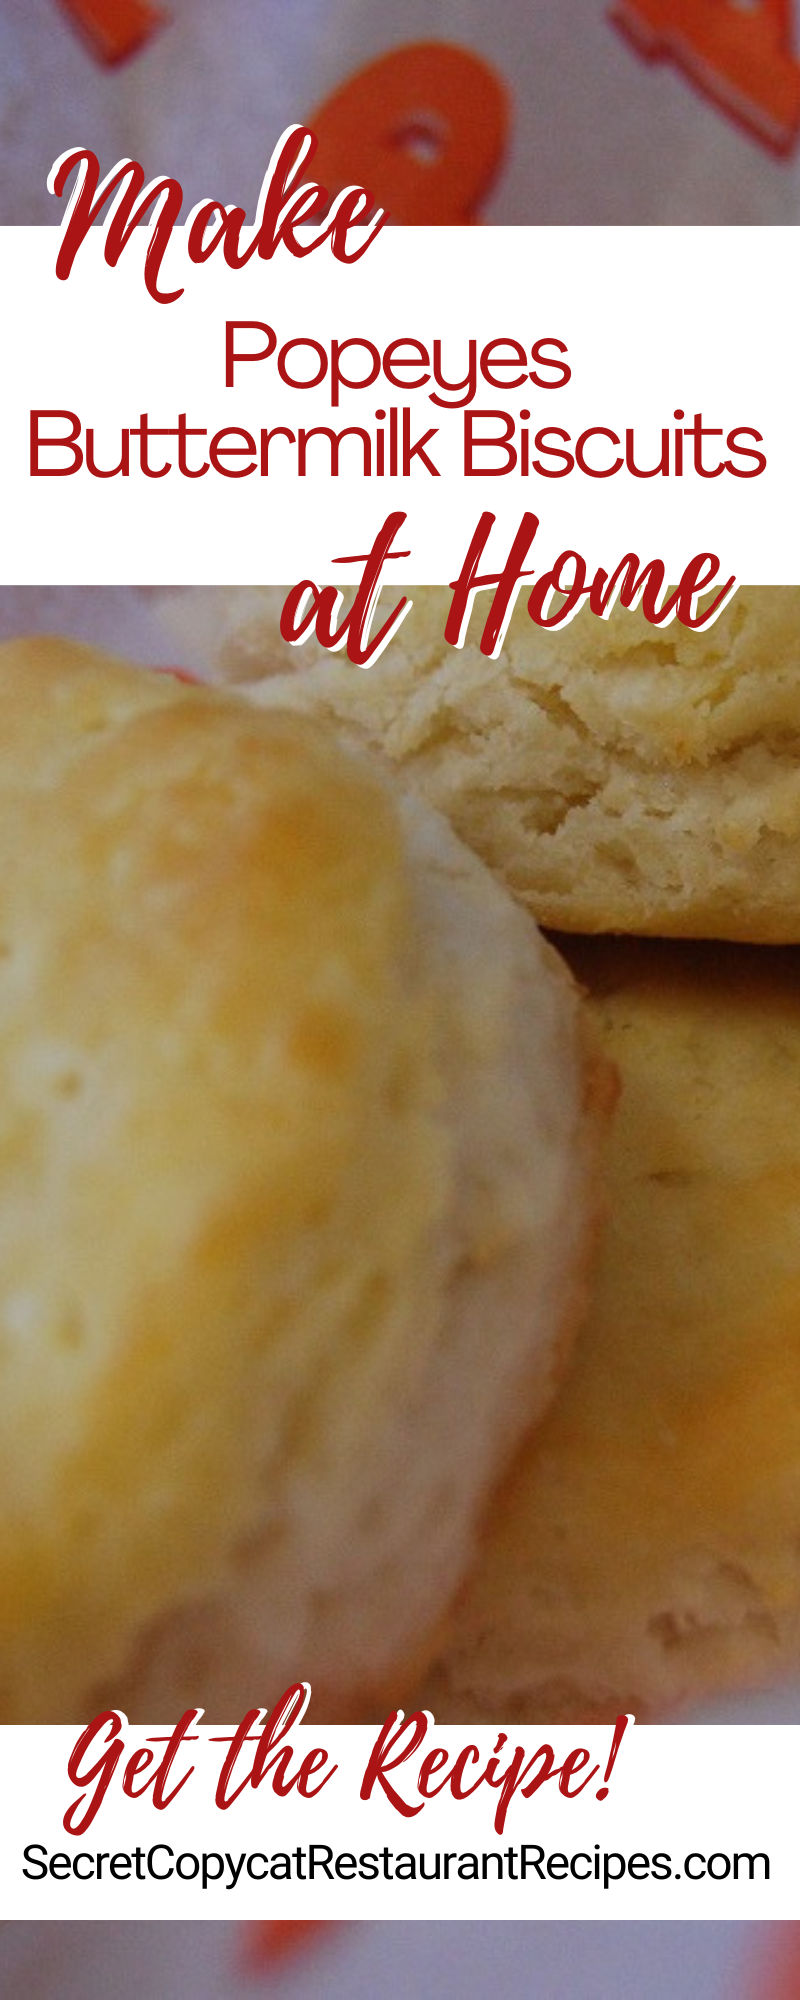 Popeyes Buttermilk Biscuits Recipe